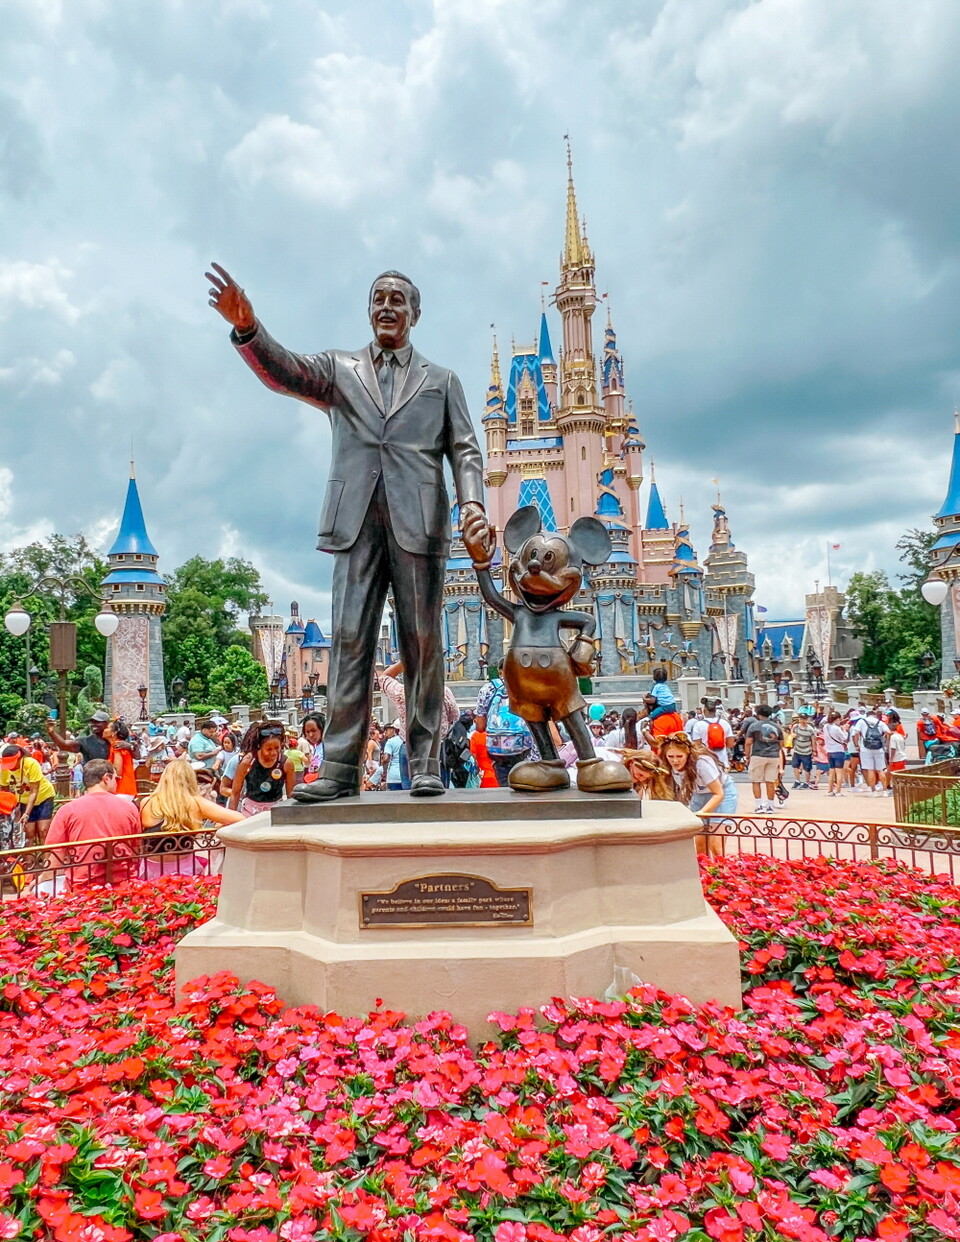 월트 디즈니와 미키마우스가 손잡고 있는 기념상